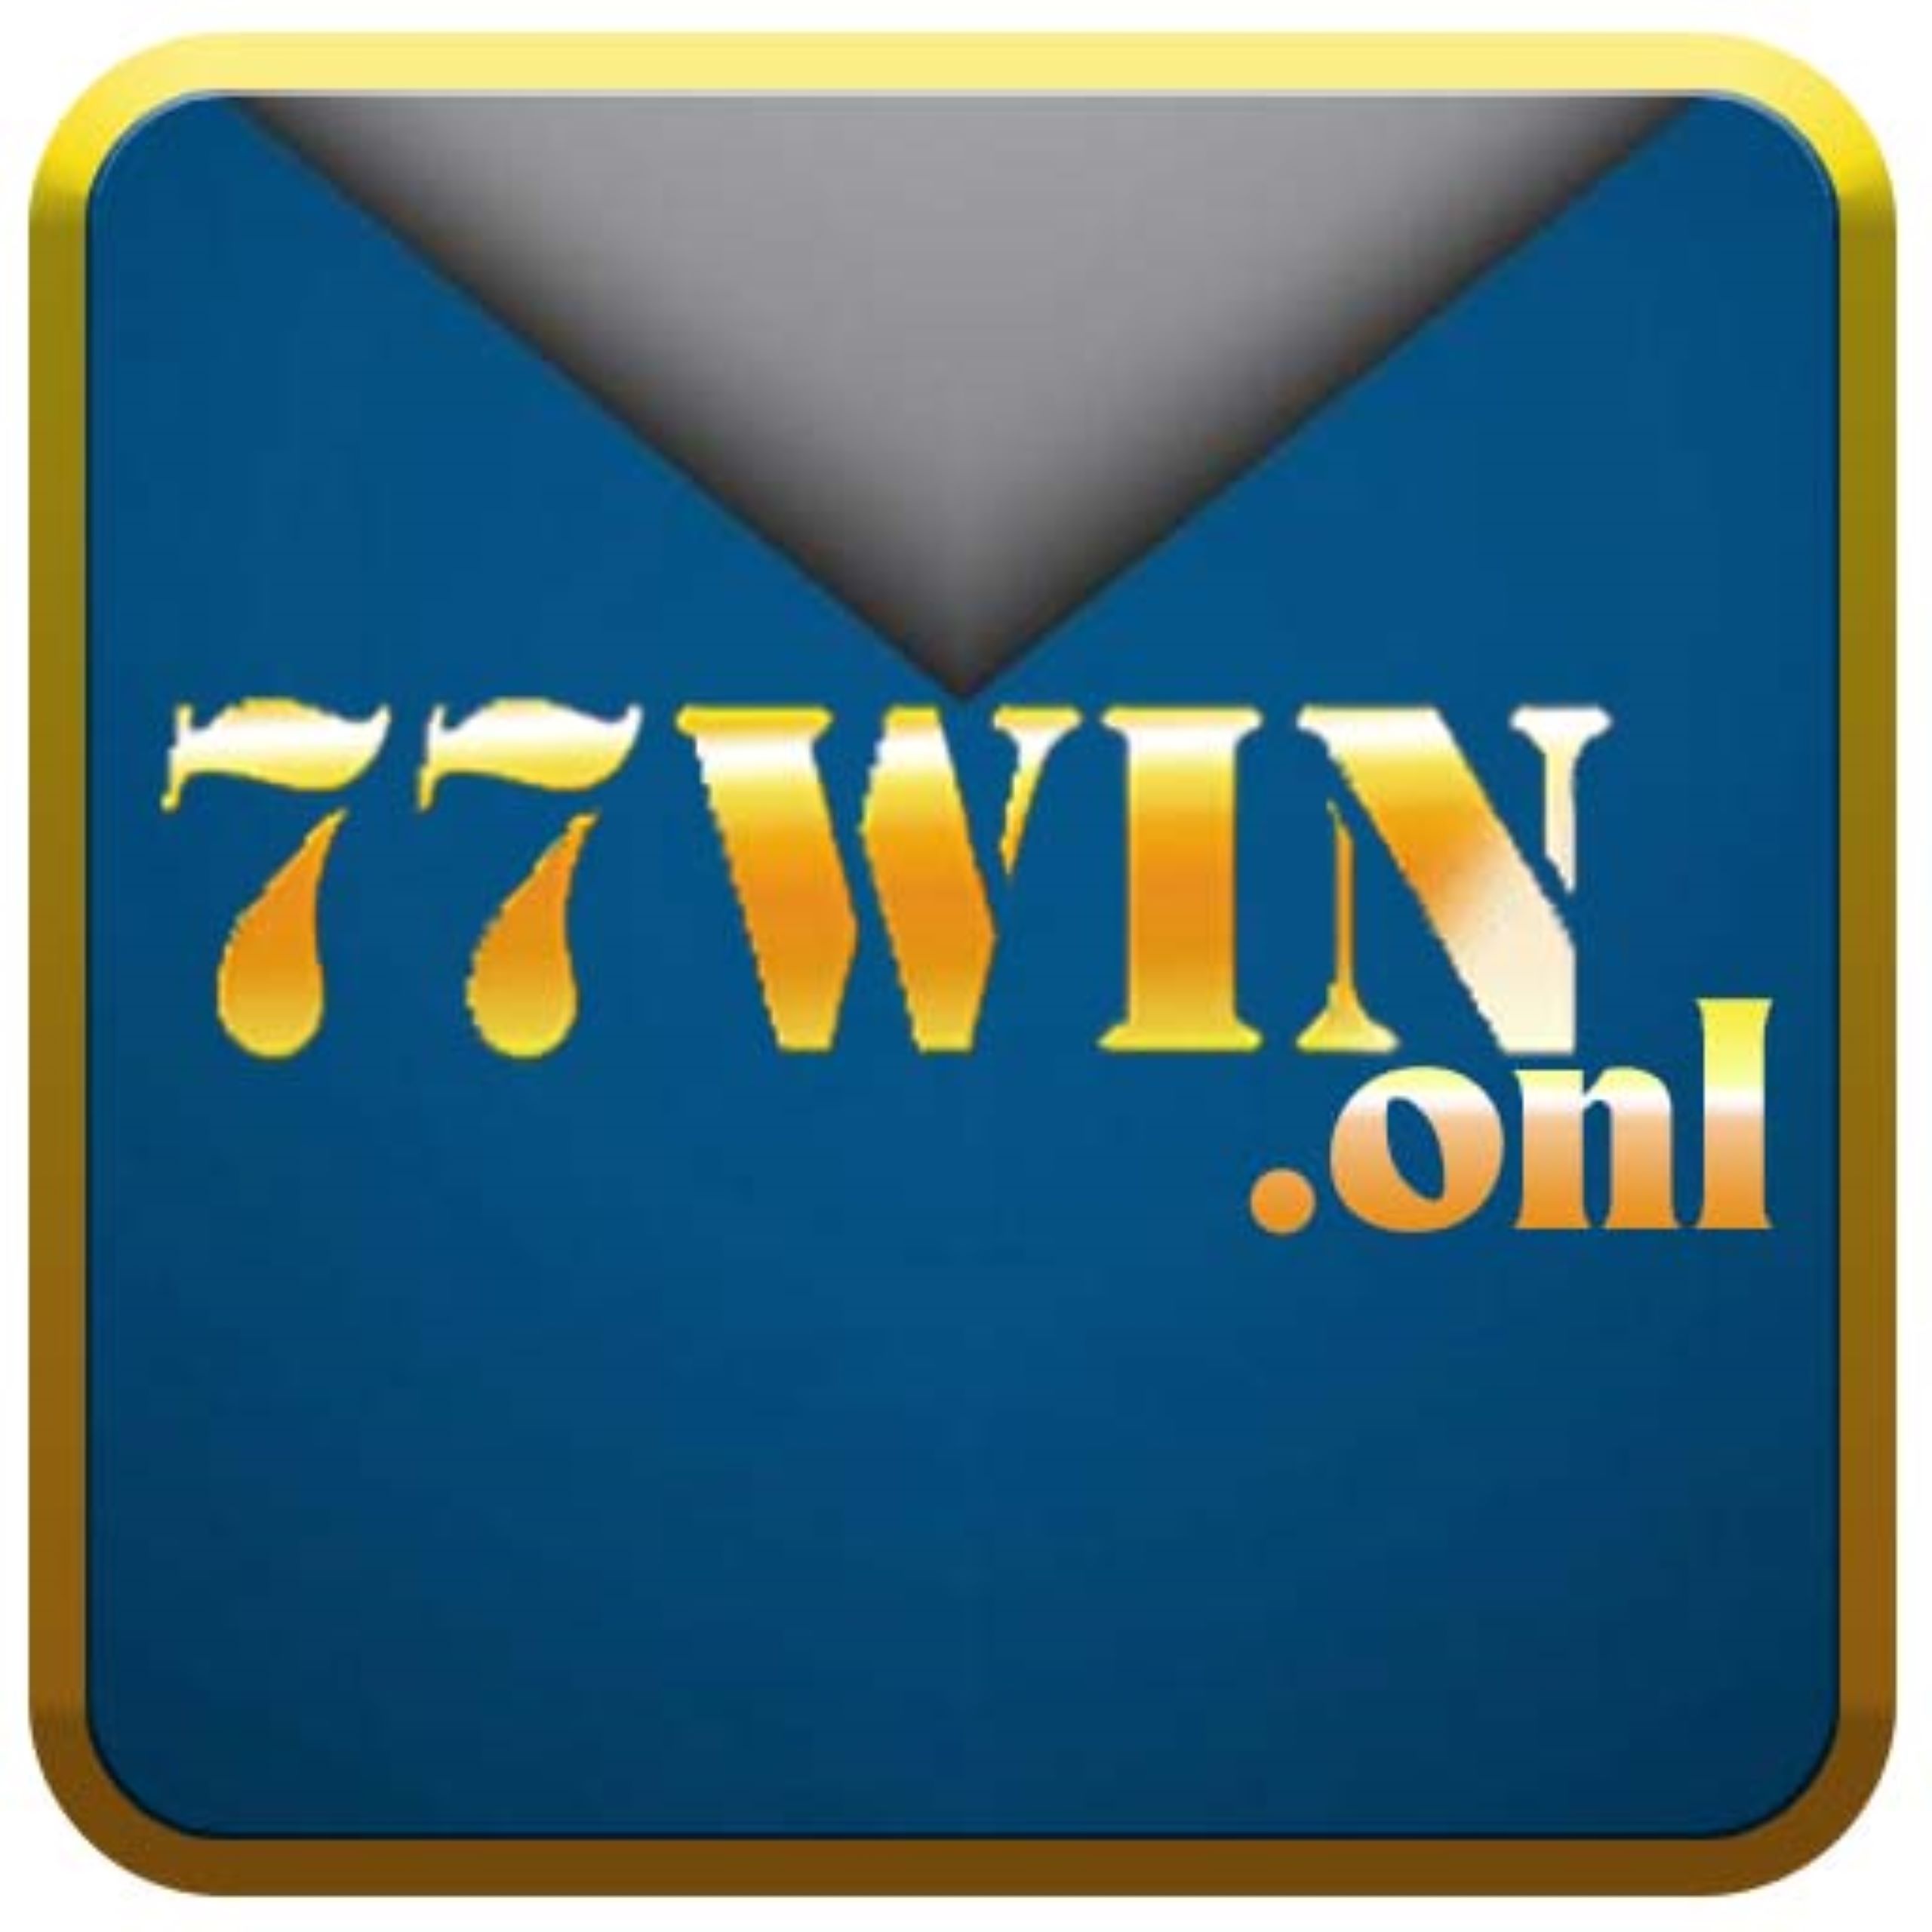 77win onl's avatar'